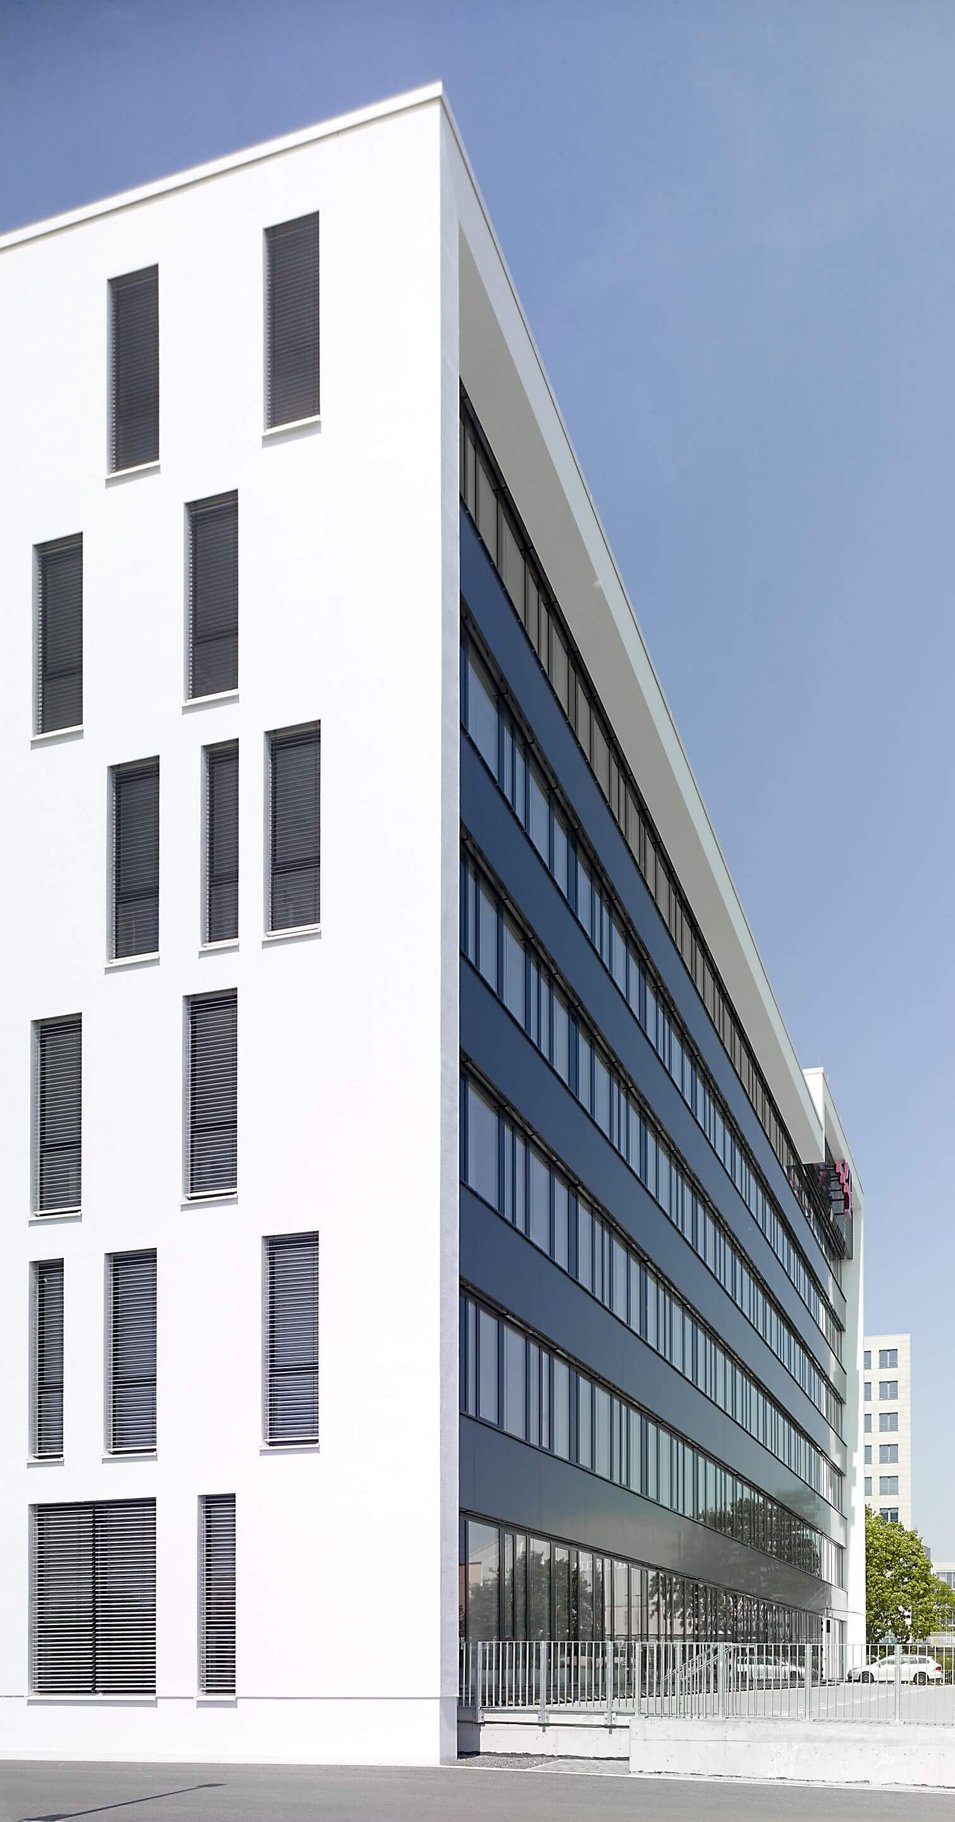 Telekom Gebäude Fassade & Bürogebäude Frankfurt am Main Seitenansicht